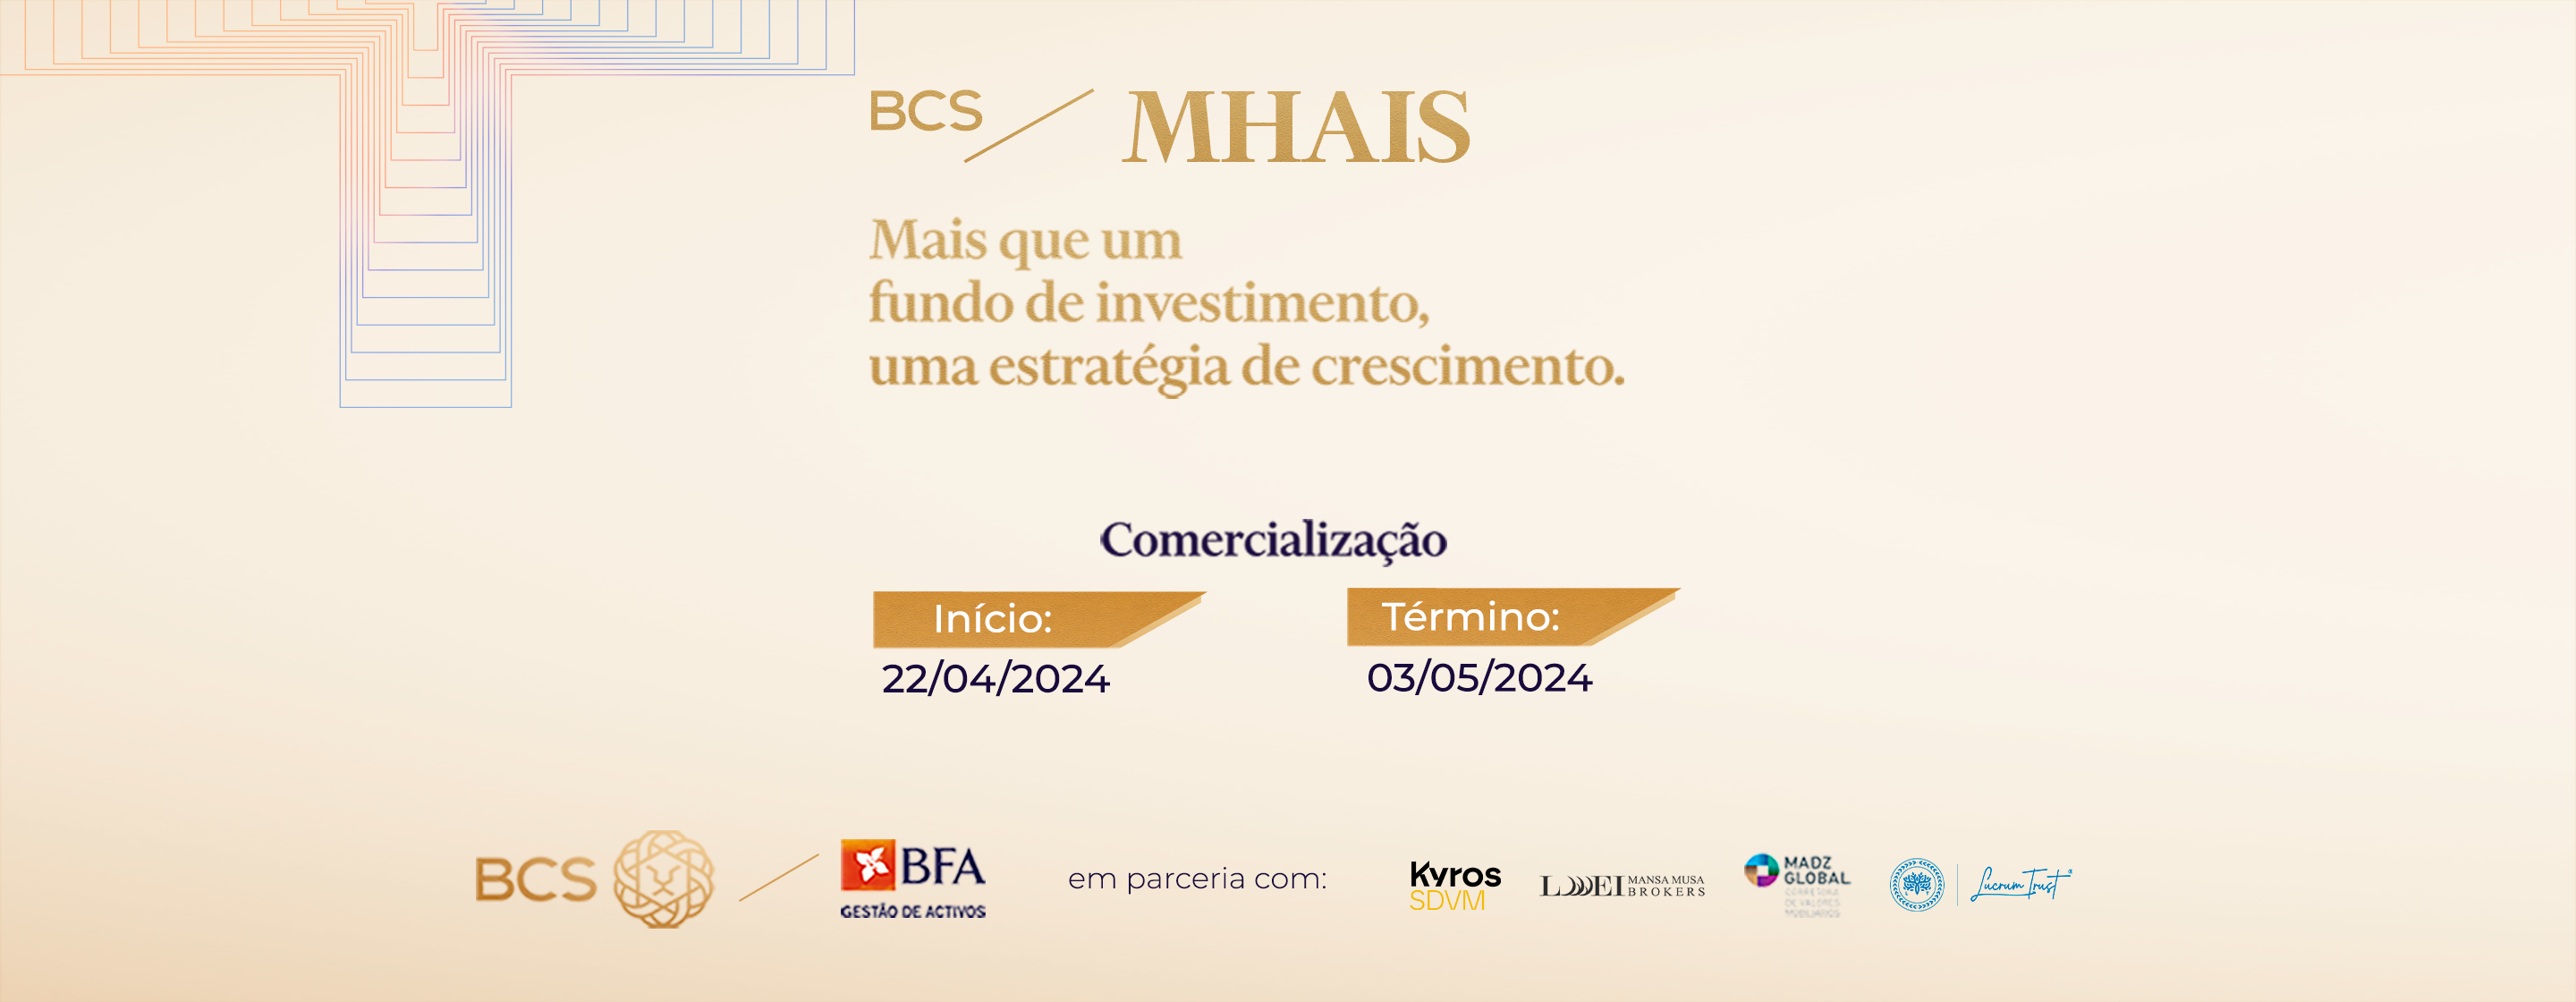 Banner_Fundo De Investimento_BCS MHAIS